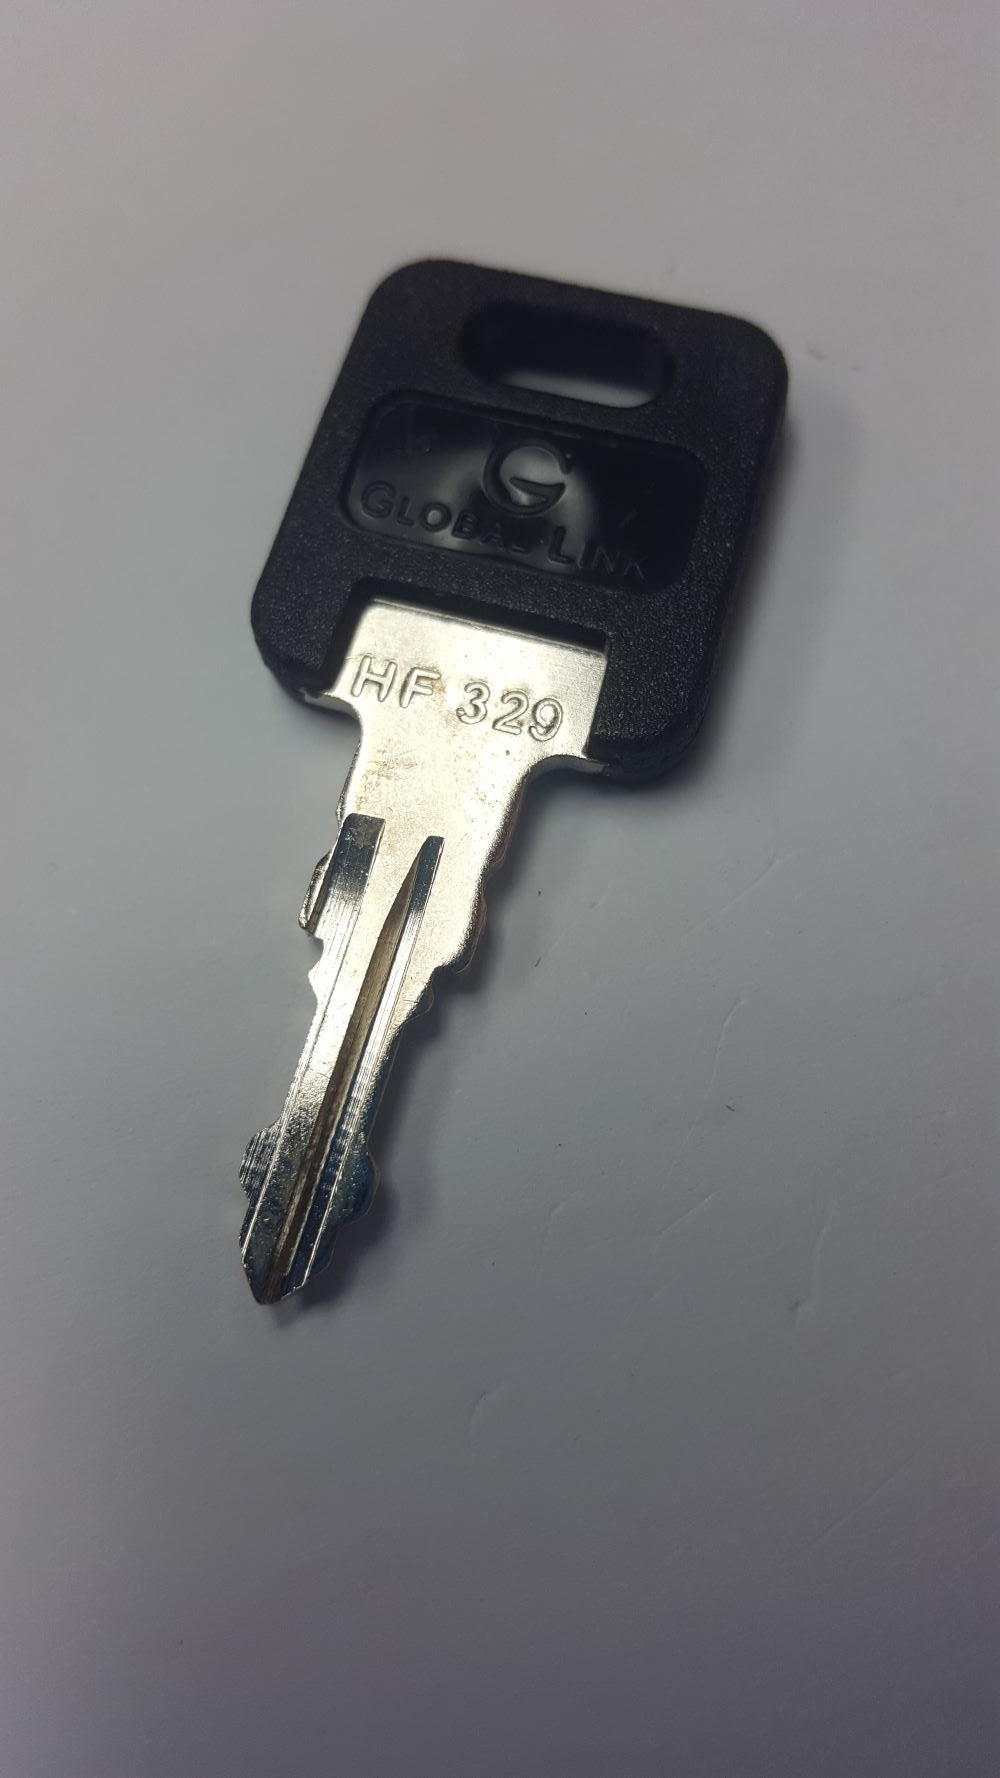 CPG KEY-HF-329 Pre-cut Stamped FIC Replacemnt HF329 Key